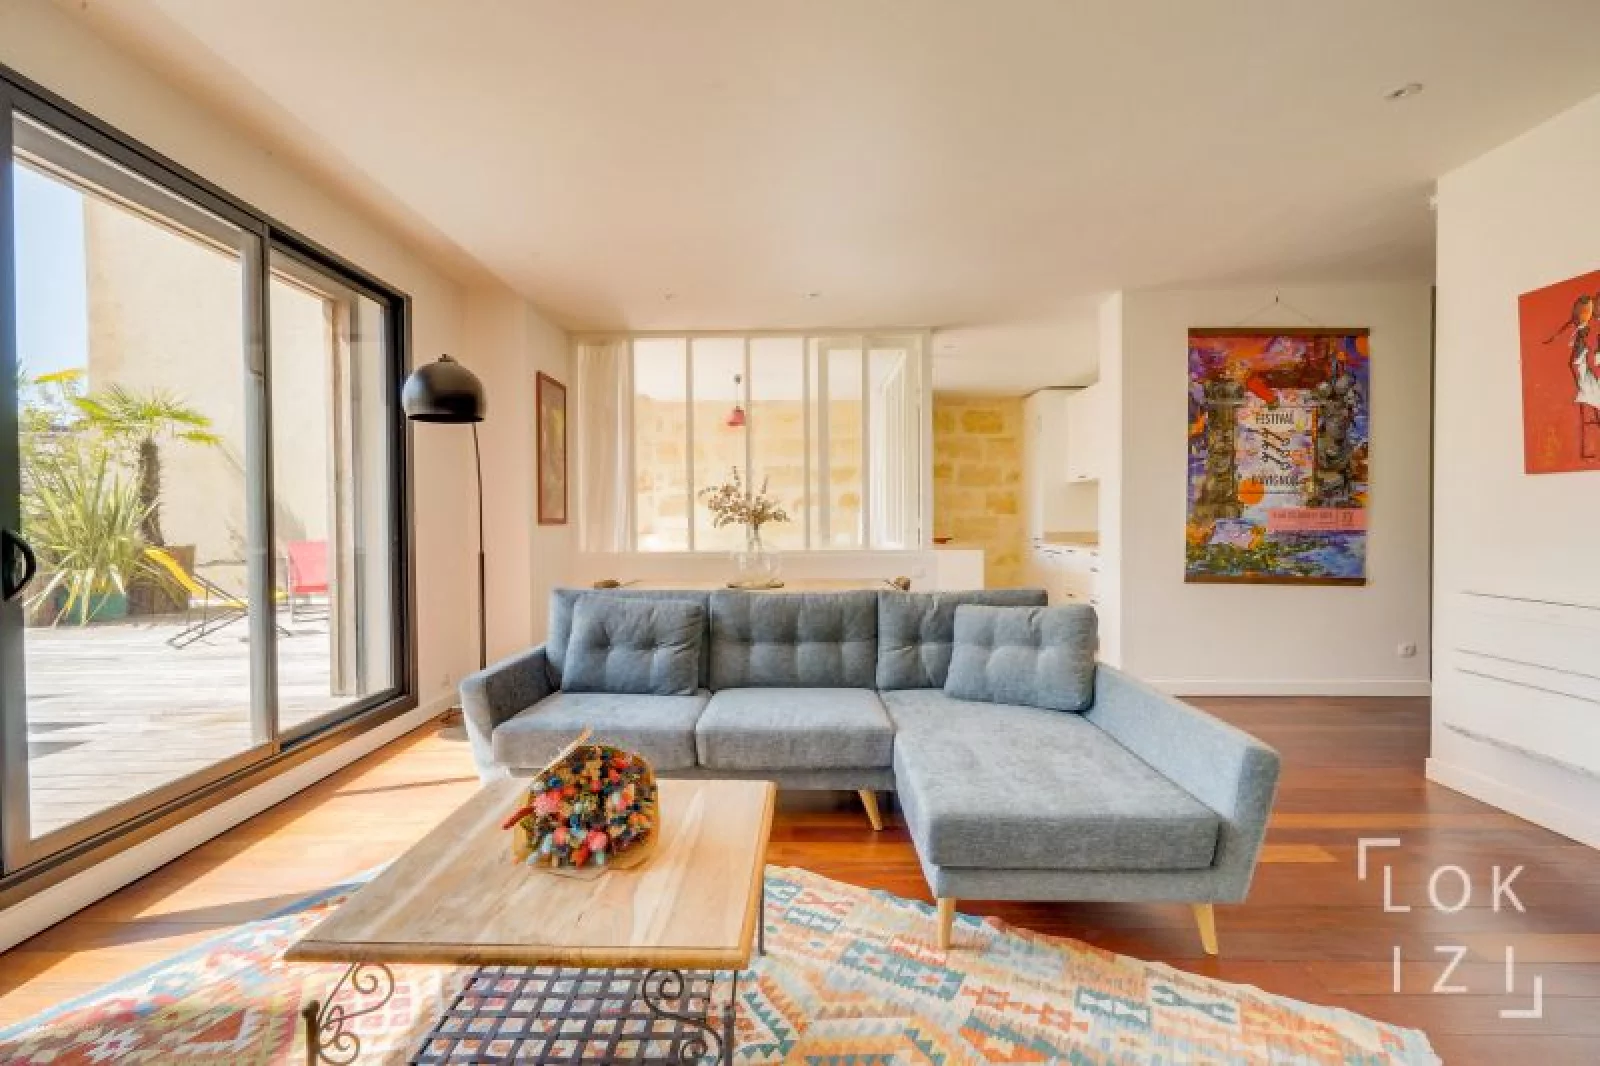 Location appartement meublé 4 pièces 117m² (Bordeaux - Bastide)